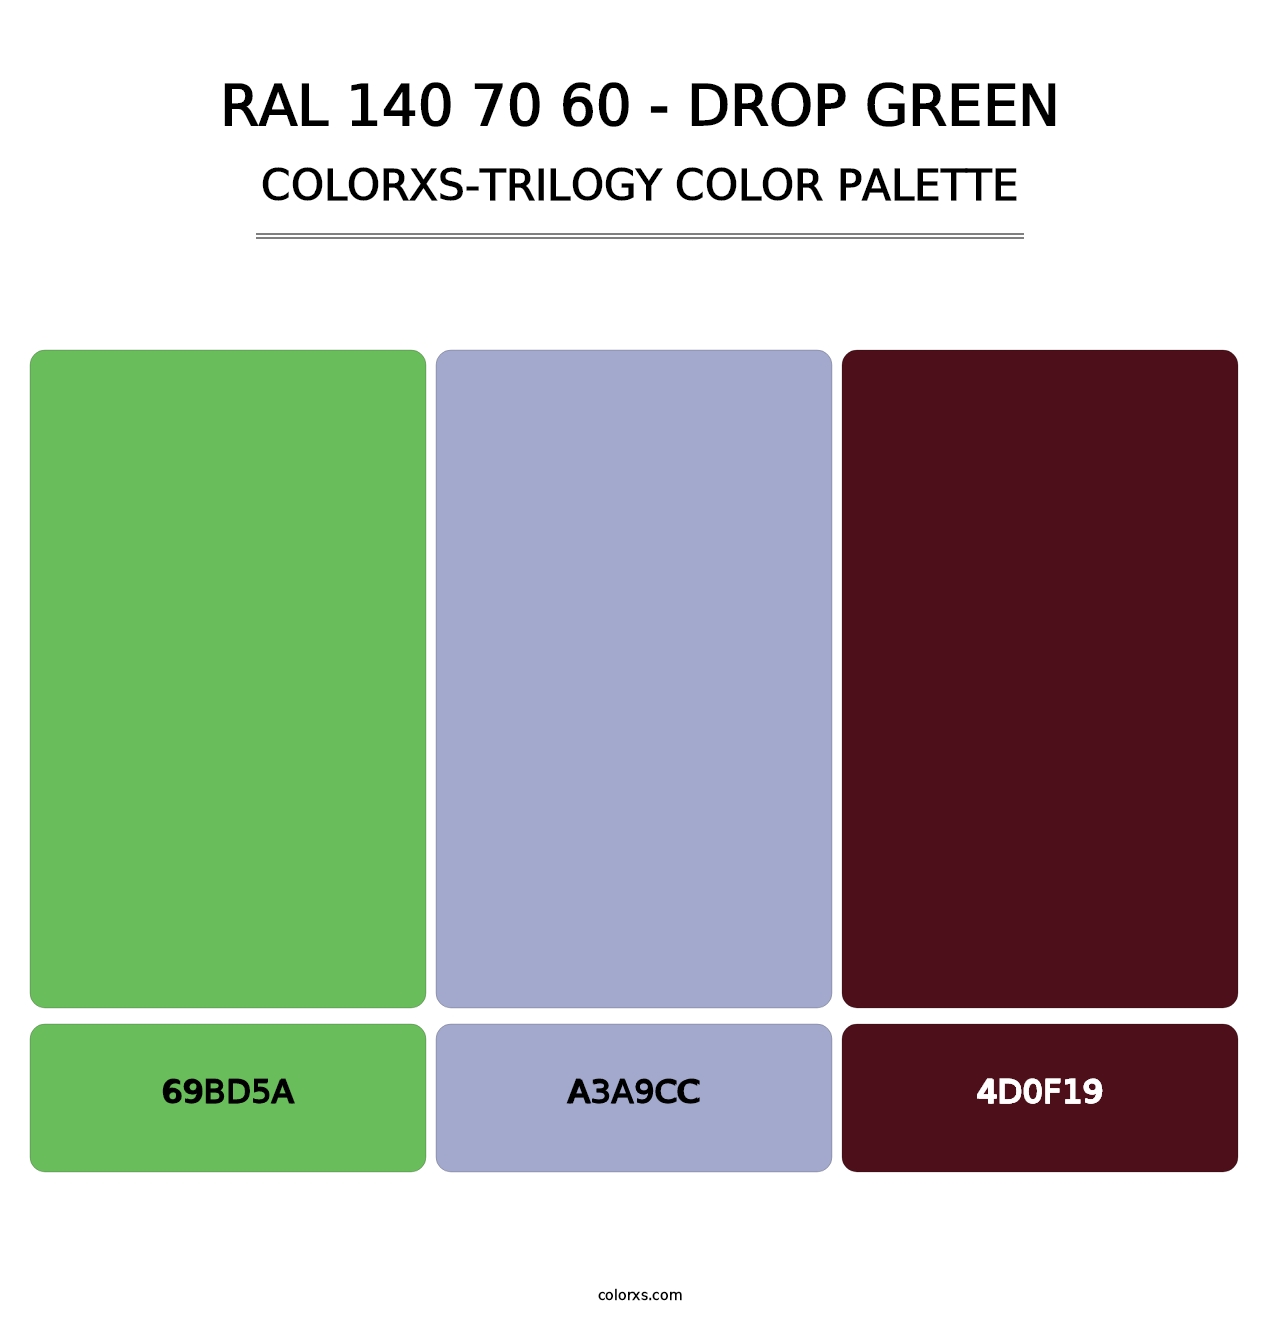 RAL 140 70 60 - Drop Green - Colorxs Trilogy Palette